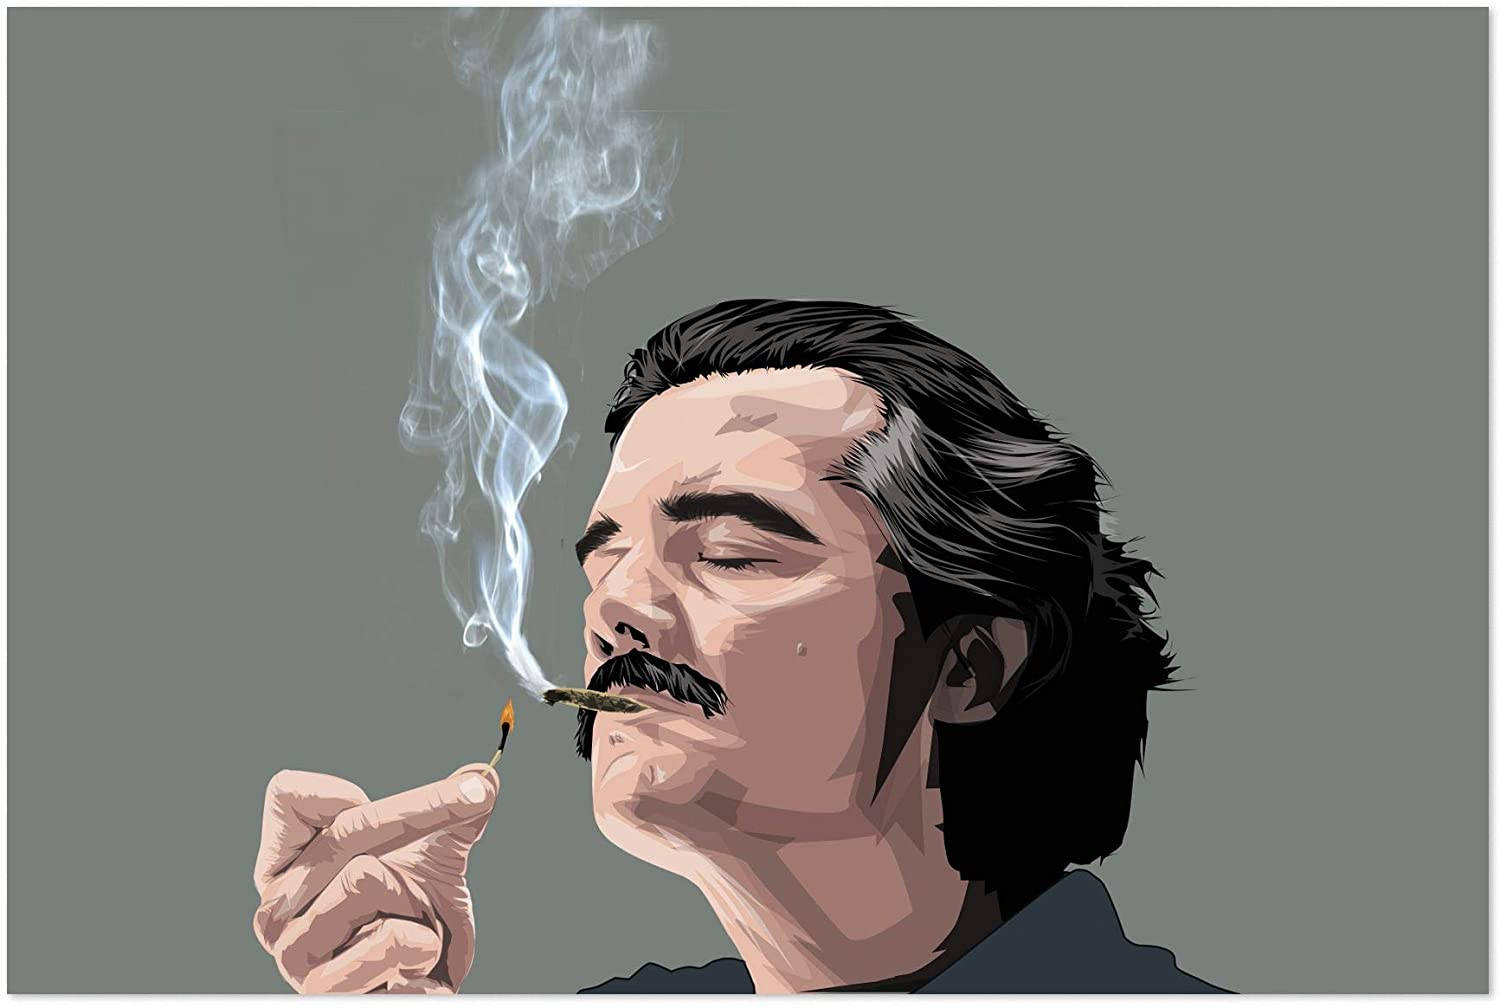 Pablo Escobar Smoking A Cigarette